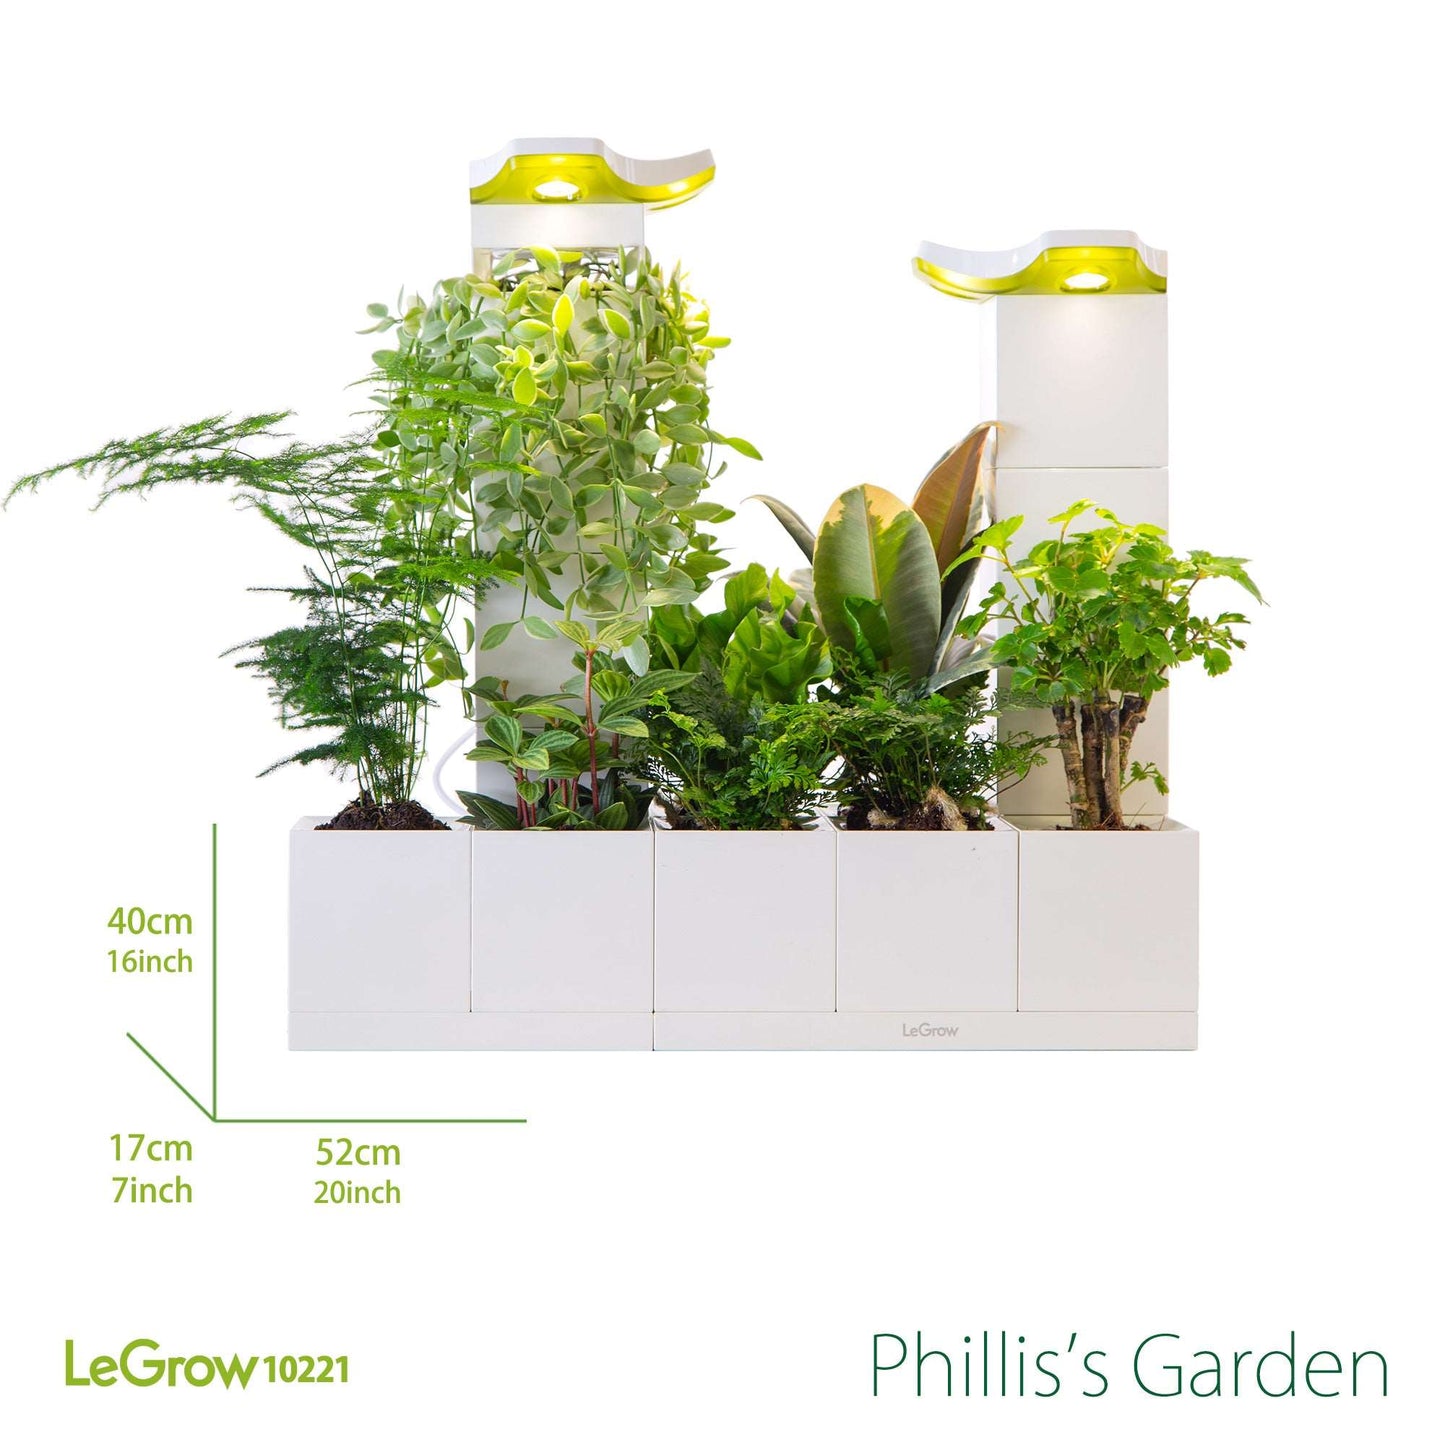 Phillis's Garden |  LeGrow 10221